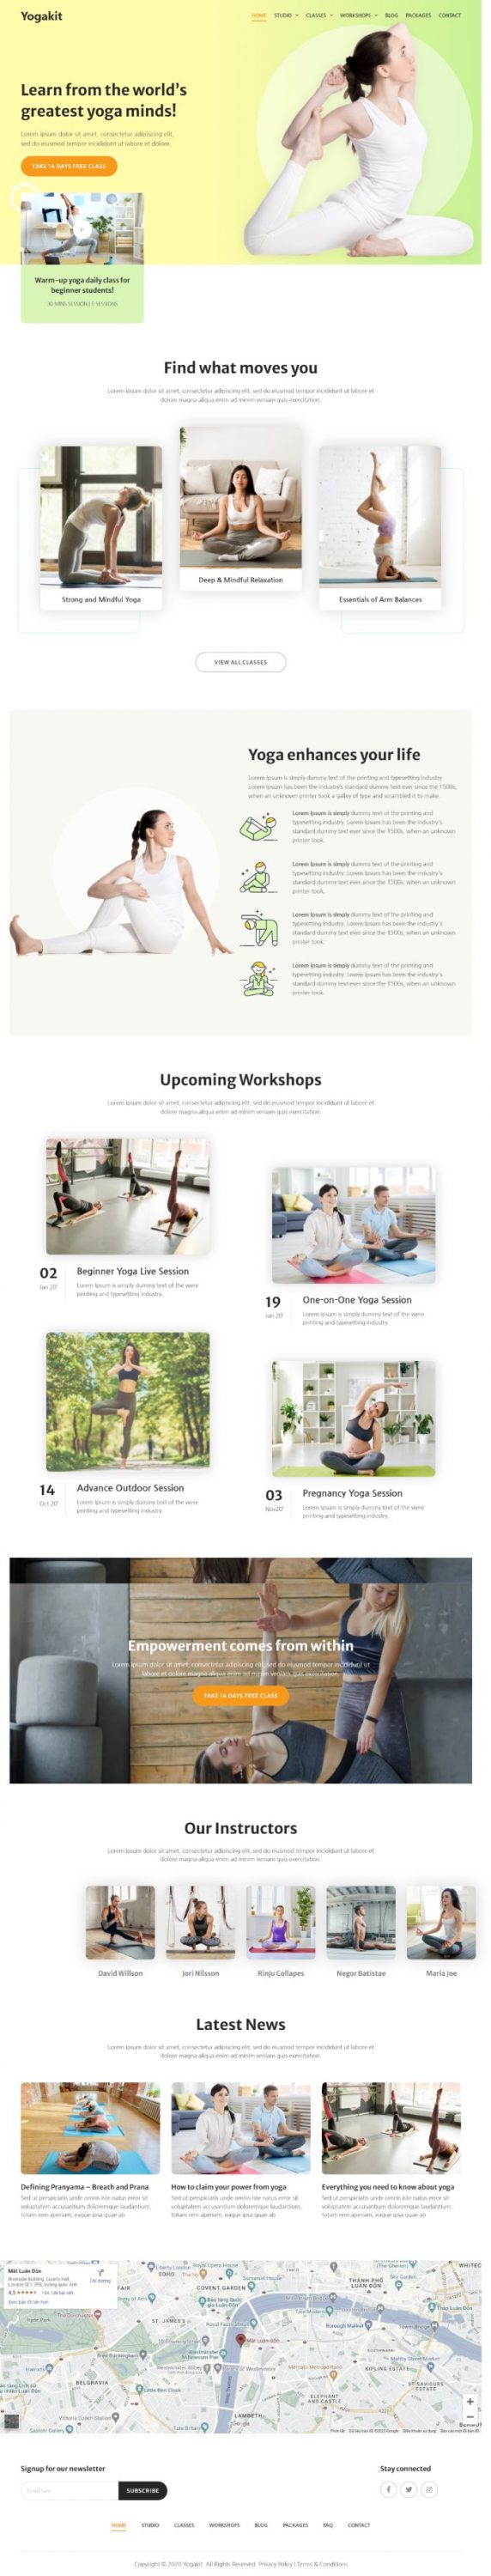 Mẫu website dịch vụ trung tâm yoga - Yogakit